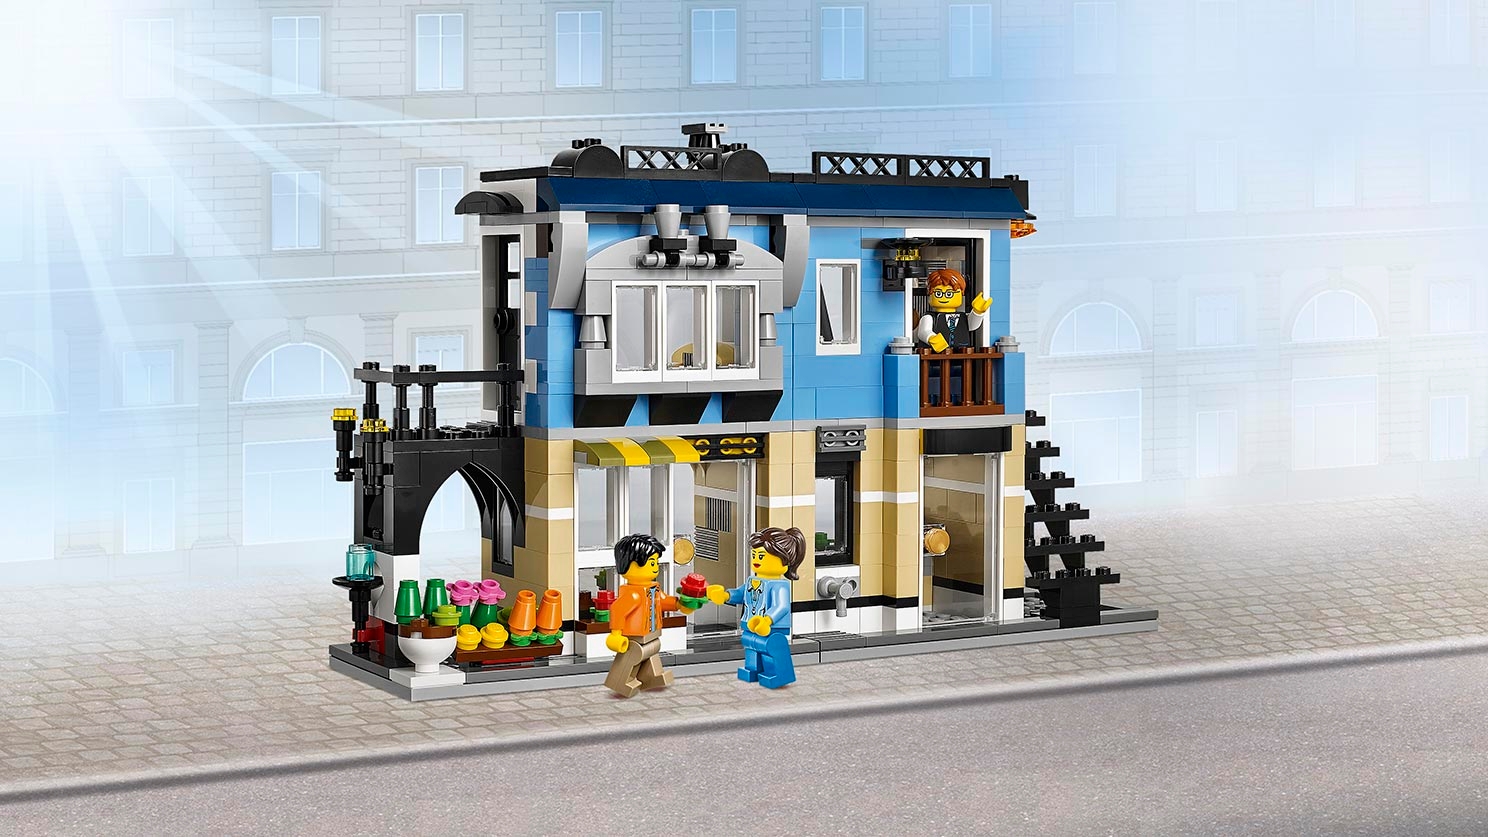 Bike Shop & Café - Videos - LEGO.com for kids